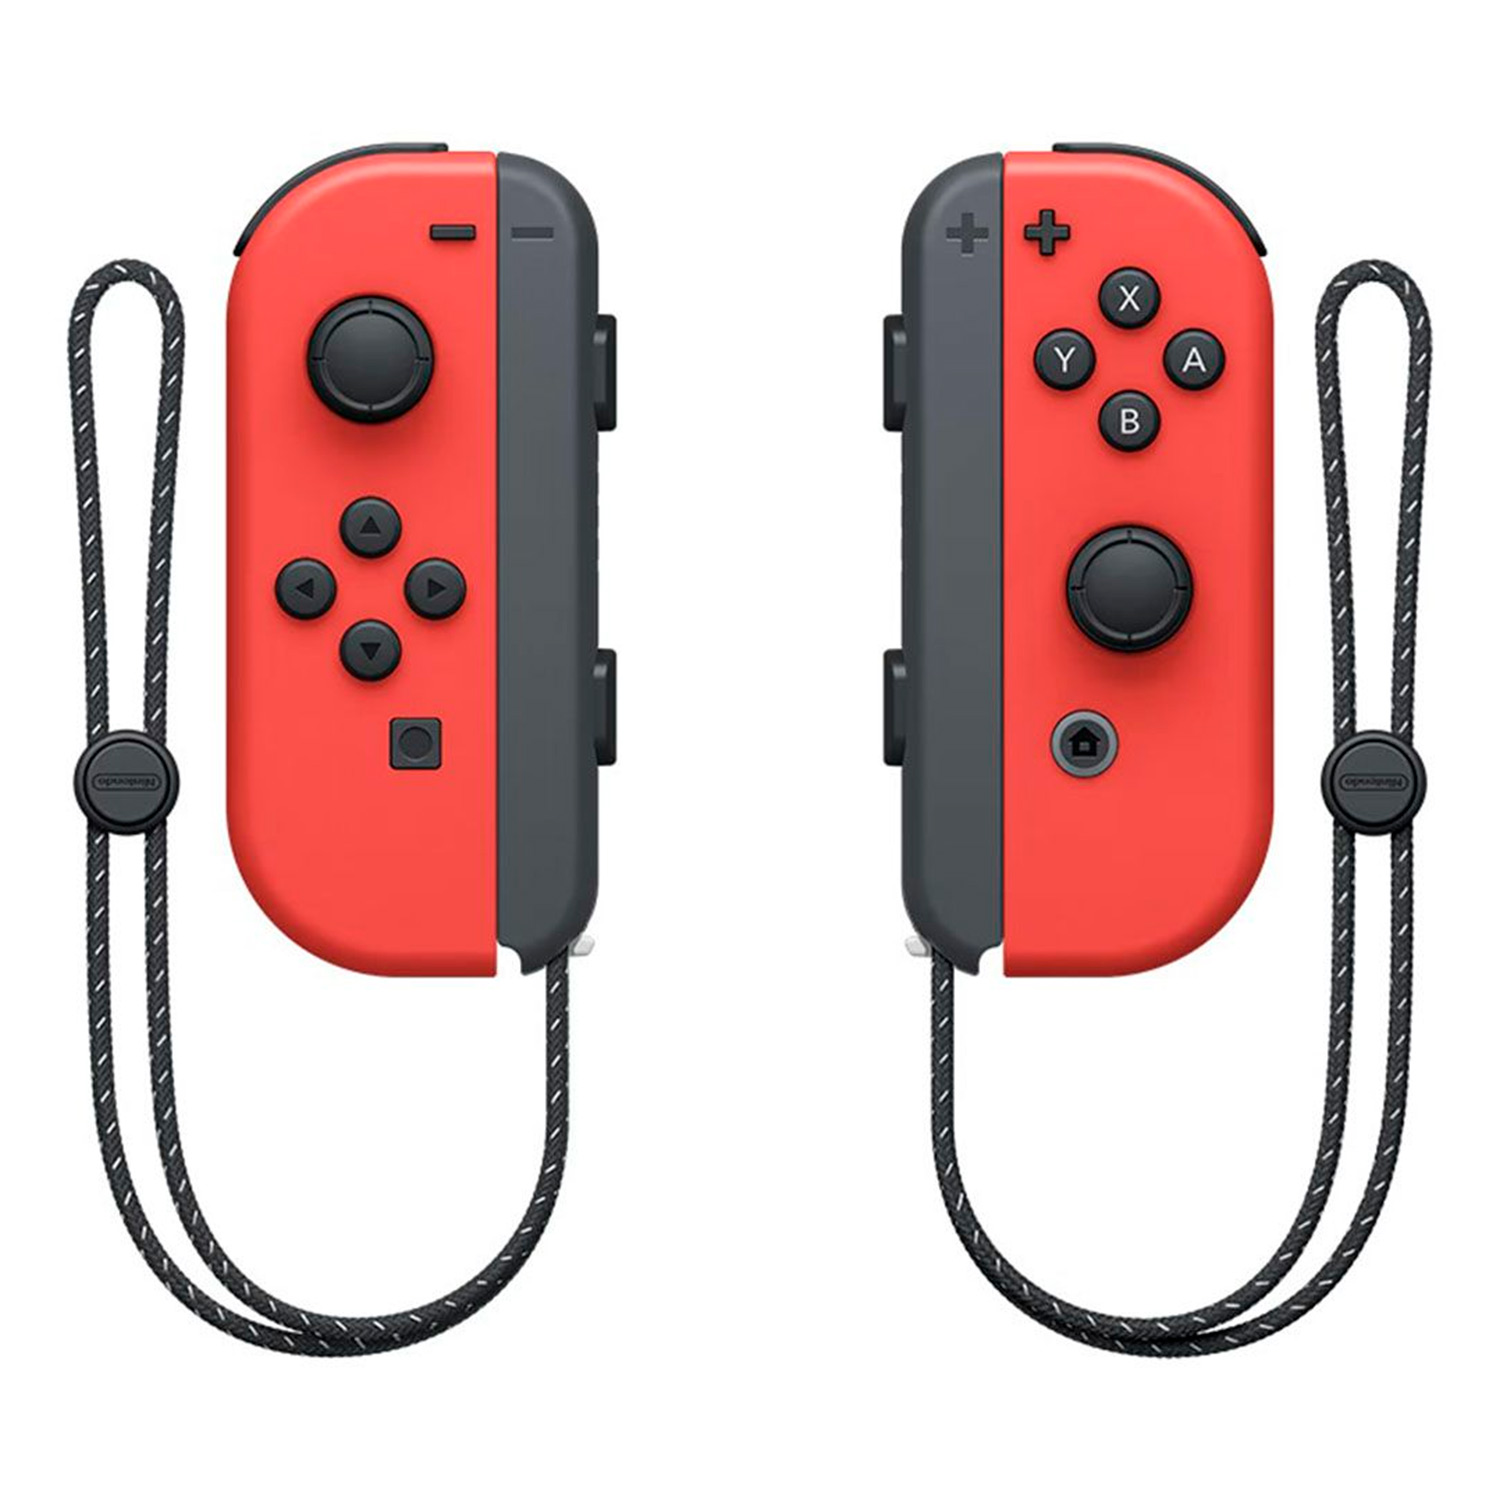 Console Nintendo Switch Oled Mario HEG-S-RAAAA 64GB - Vermelho (Caixa Danificada)